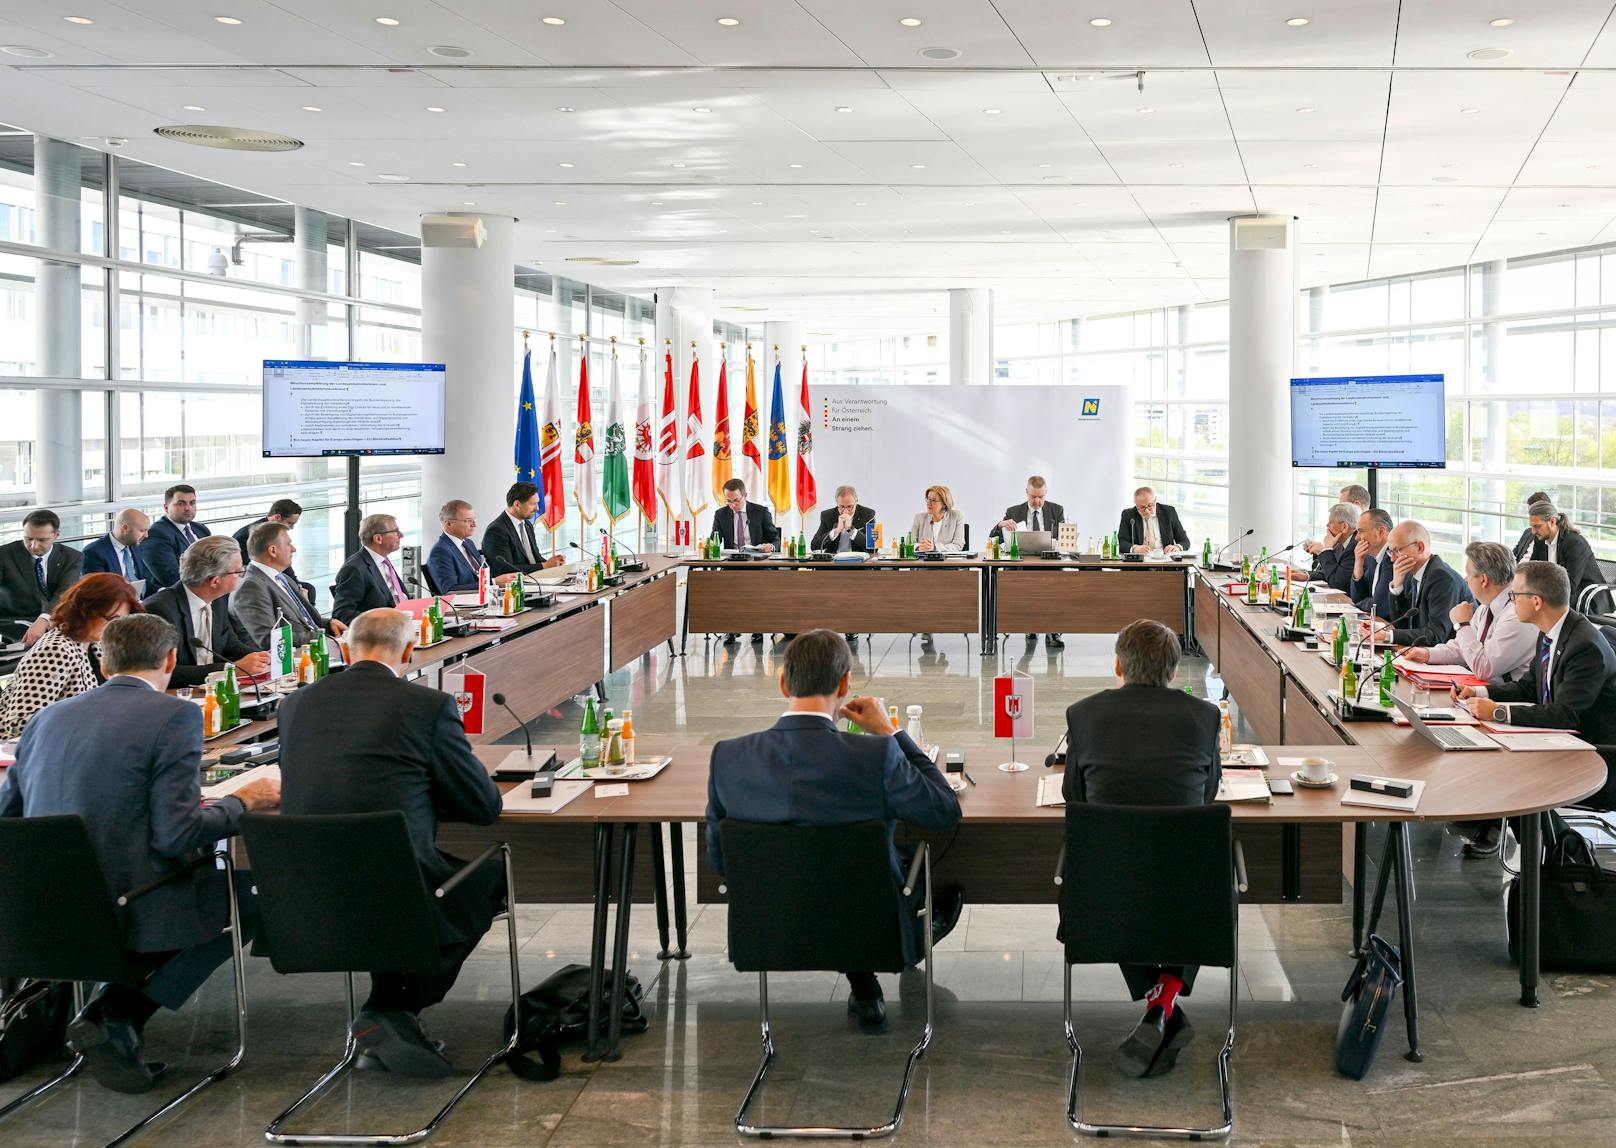 Bilder der Landeshauptleutekonferenz in St. Pölten